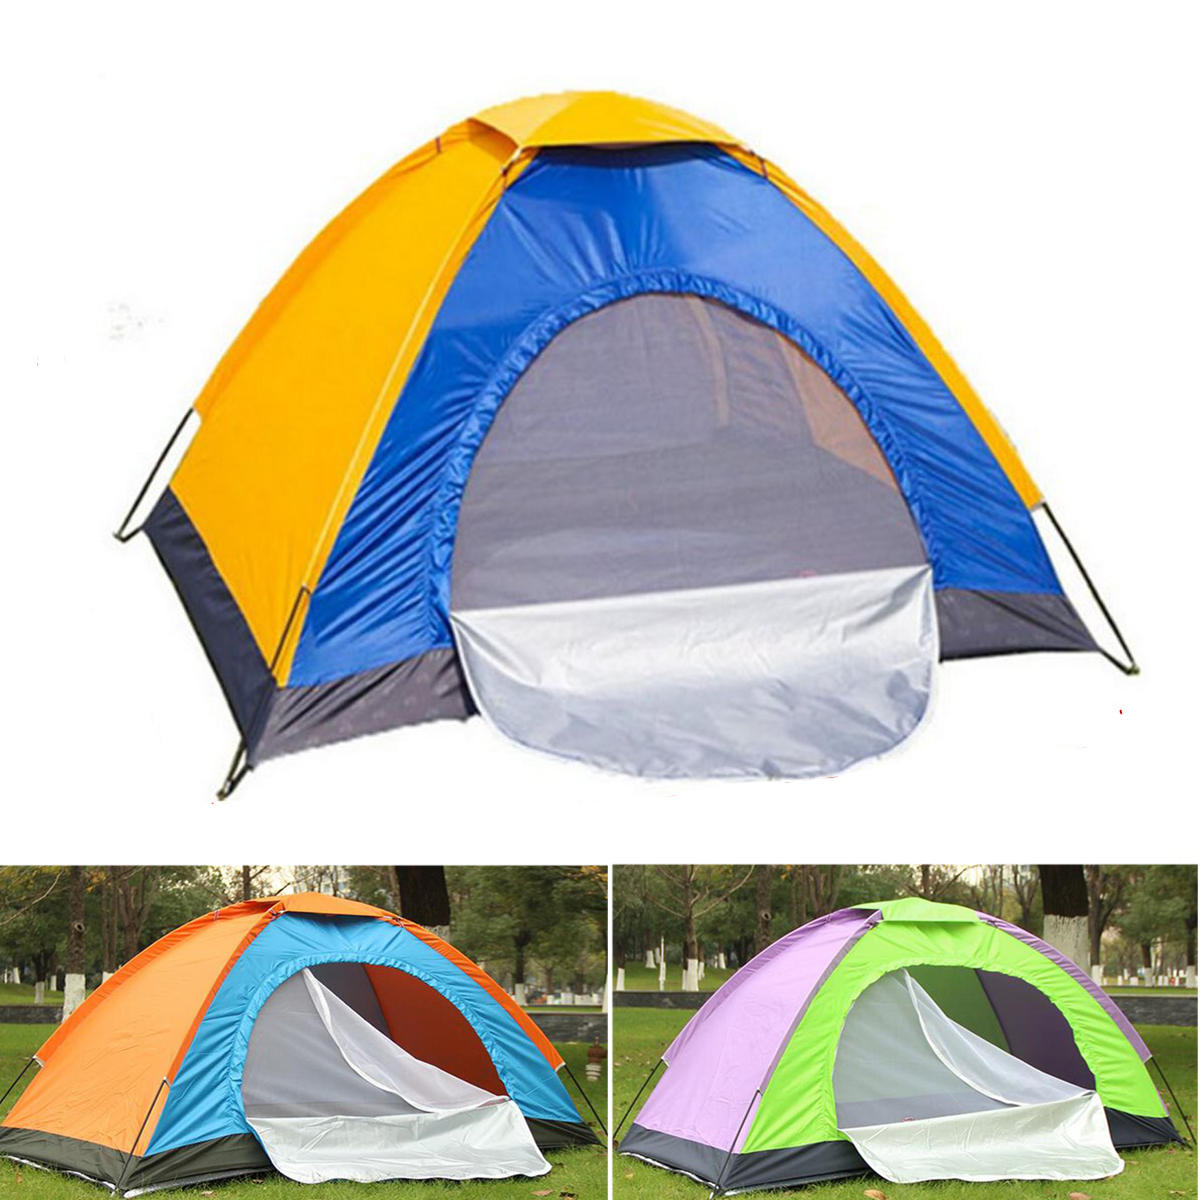 Портативная односпальная палатка для кемпинга на открытом воздухе, водонепроницаемая, защита от солнца на пляже